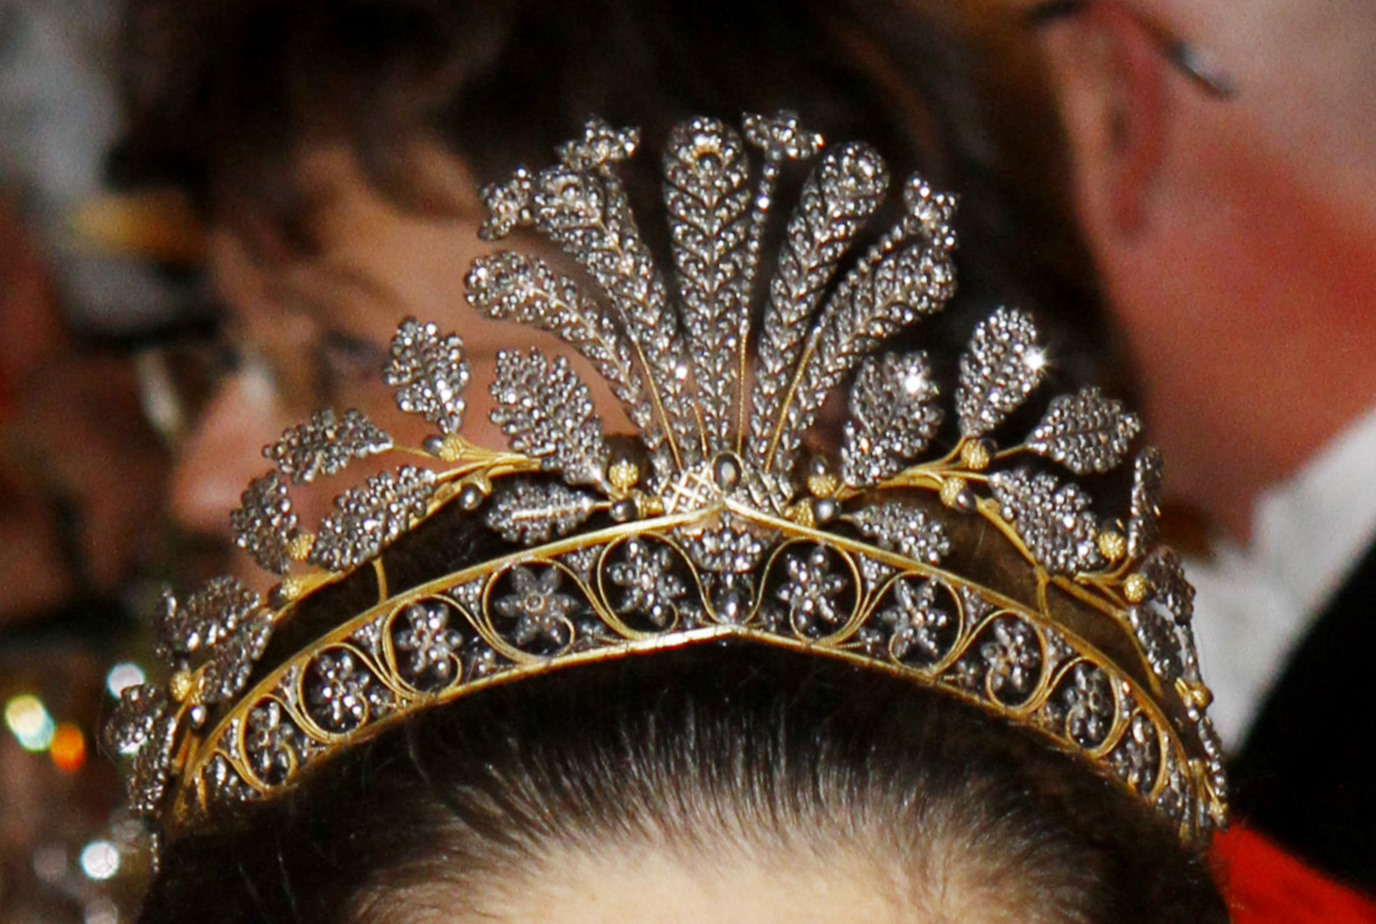 带你看欧洲王室那些材质特殊的王冠:钢铁,银,黄金,贝壳